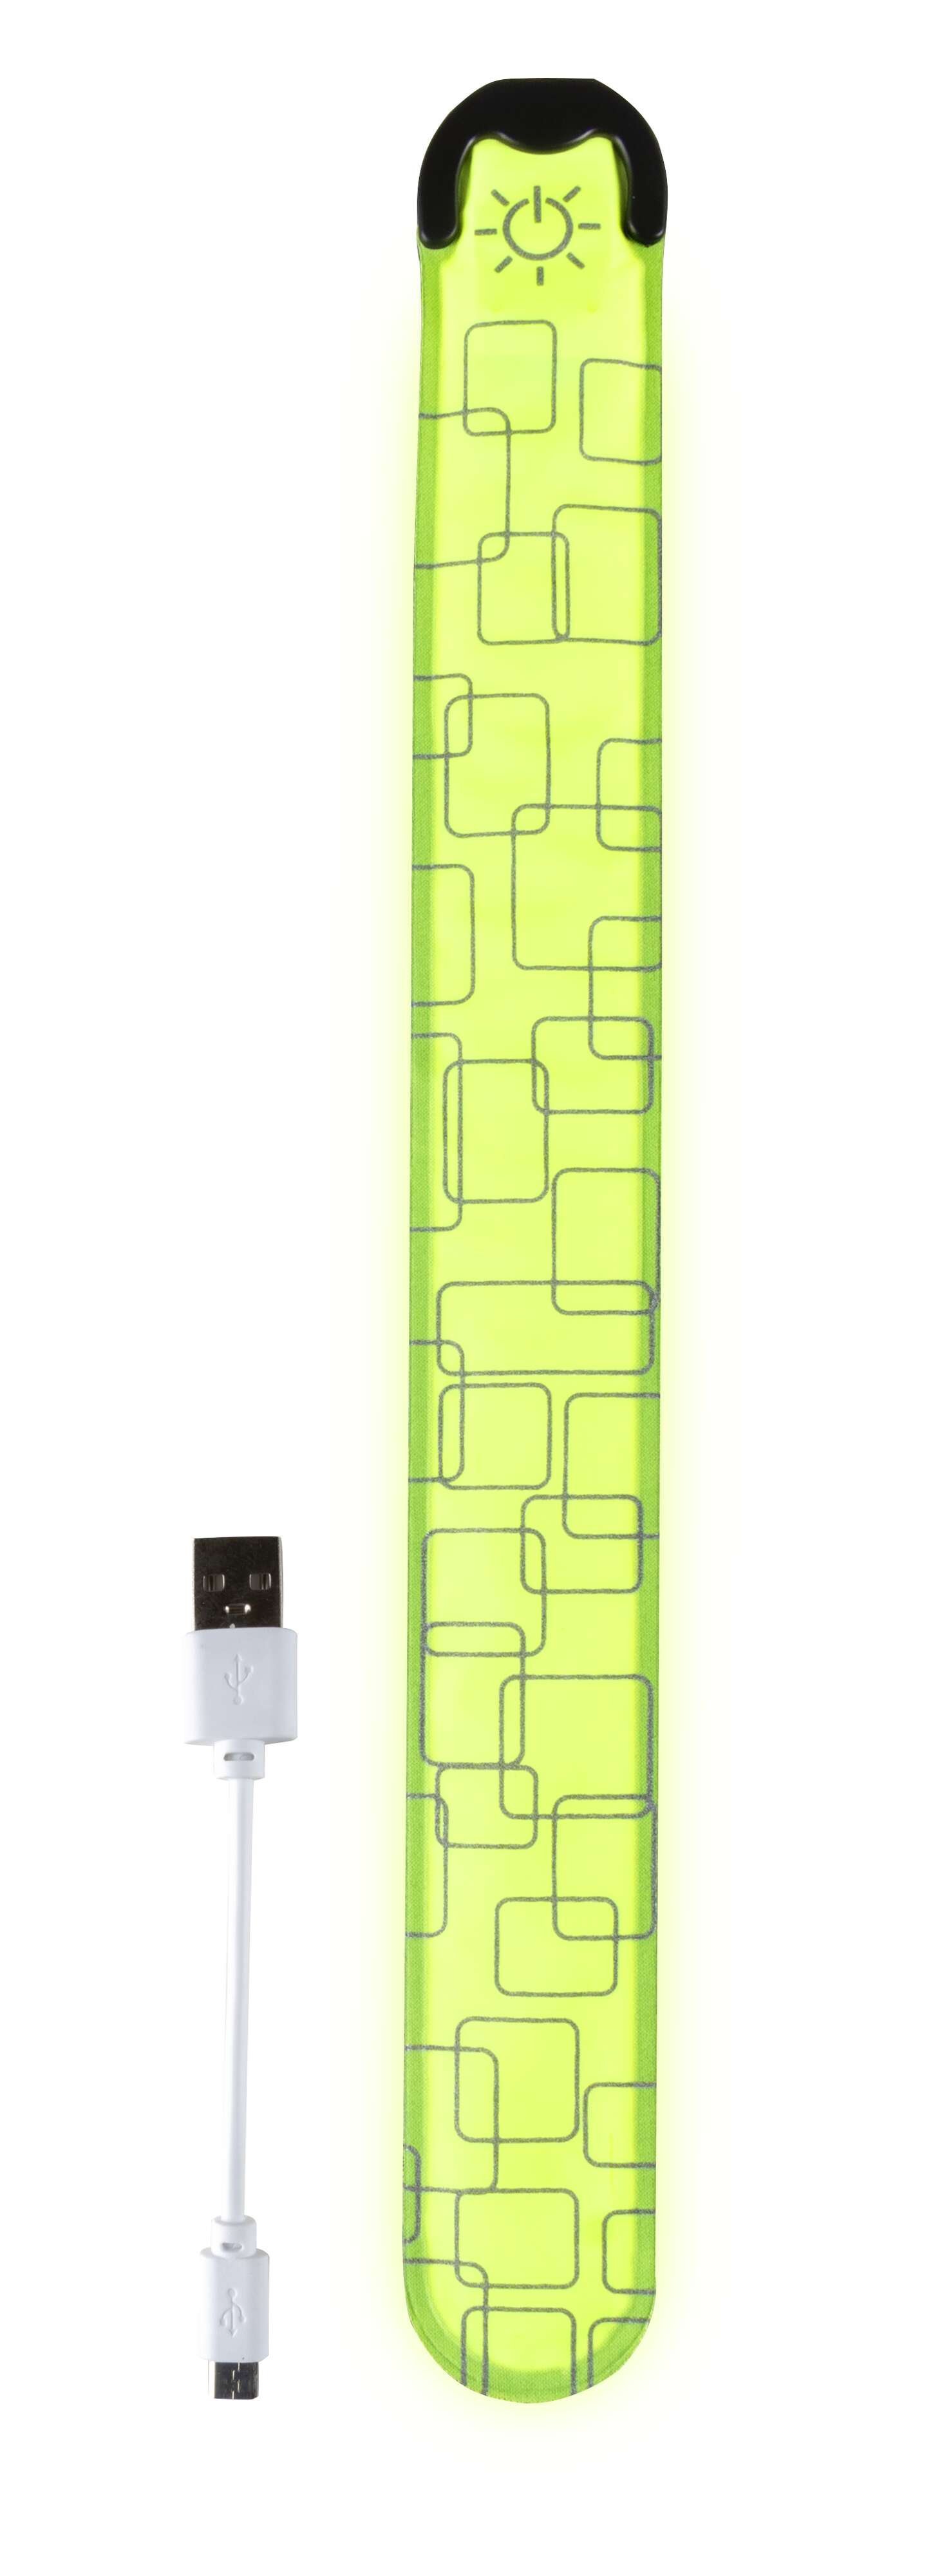 LED slap wrap, luminous slap wrap with USB charging option 36x3.5 cm yellow